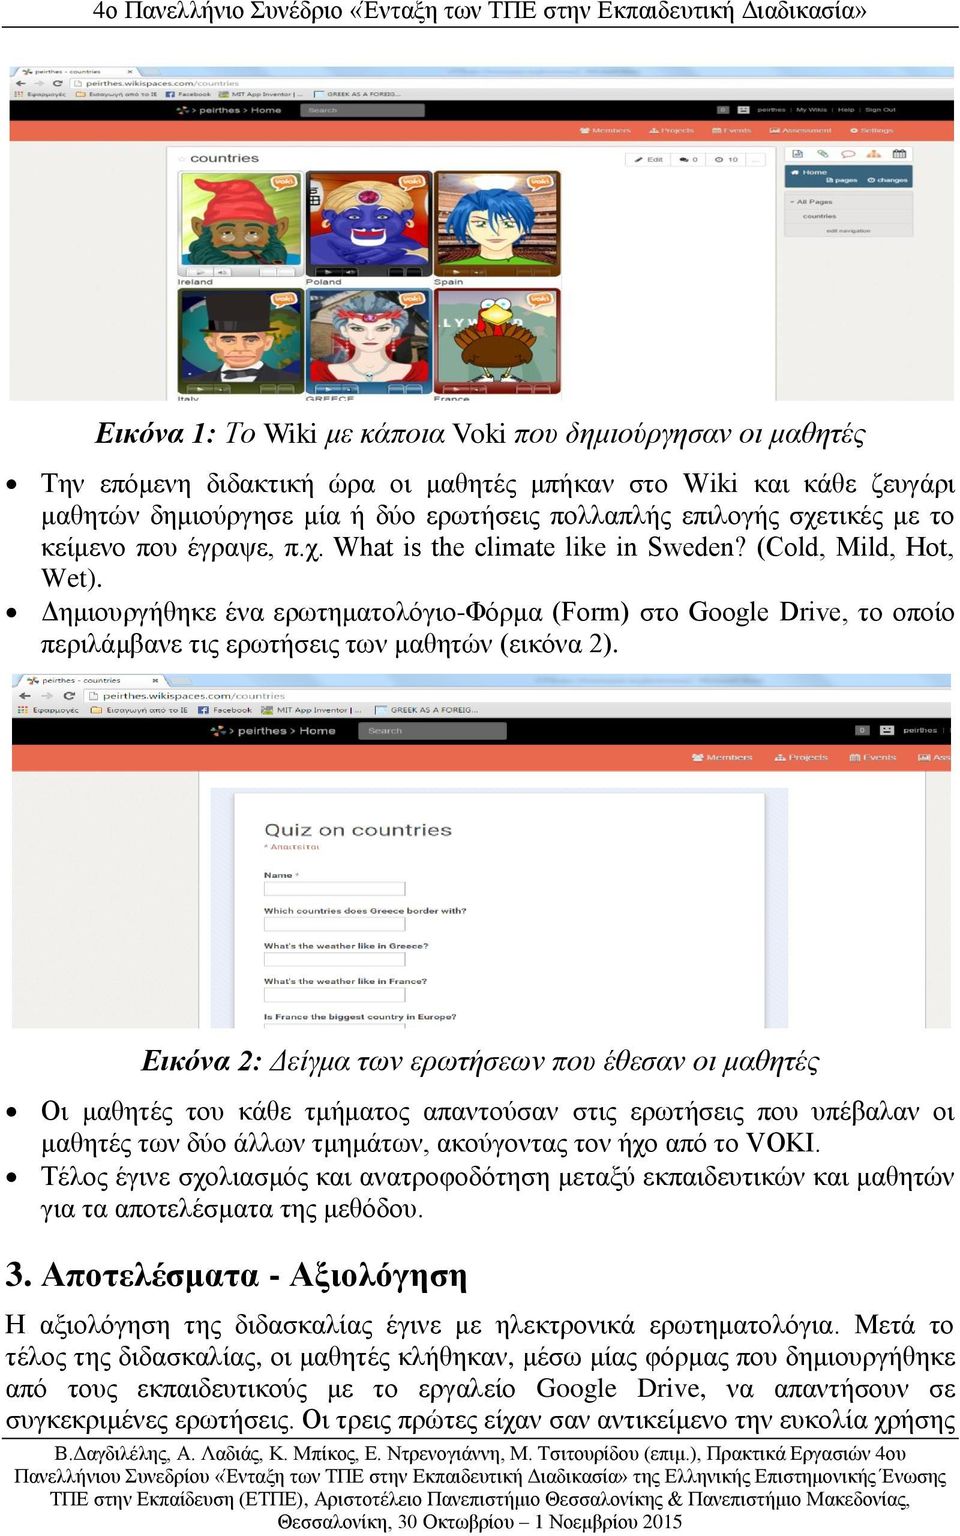 Δημιουργήθηκε ένα ερωτηματολόγιο-φόρμα (Form) στο Google Drive, το οποίο περιλάμβανε τις ερωτήσεις των μαθητών (εικόνα 2).